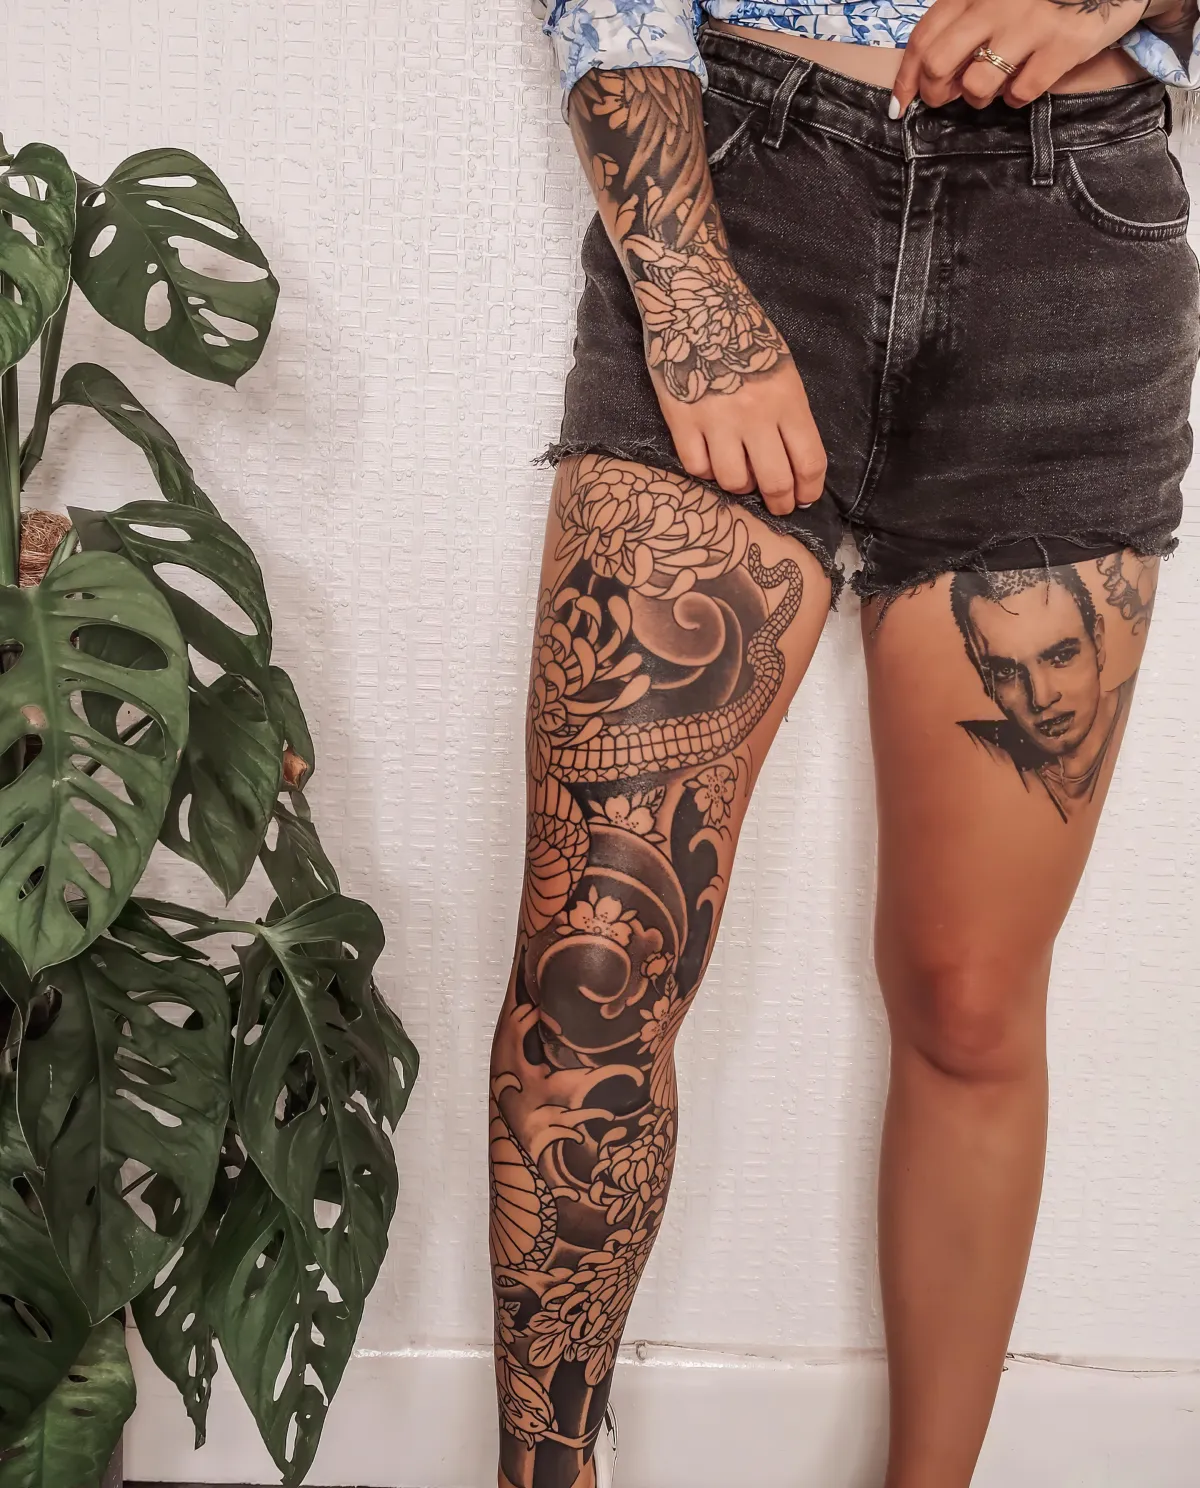 leg sleeve mandala gesicht tattoo am oberschenkel